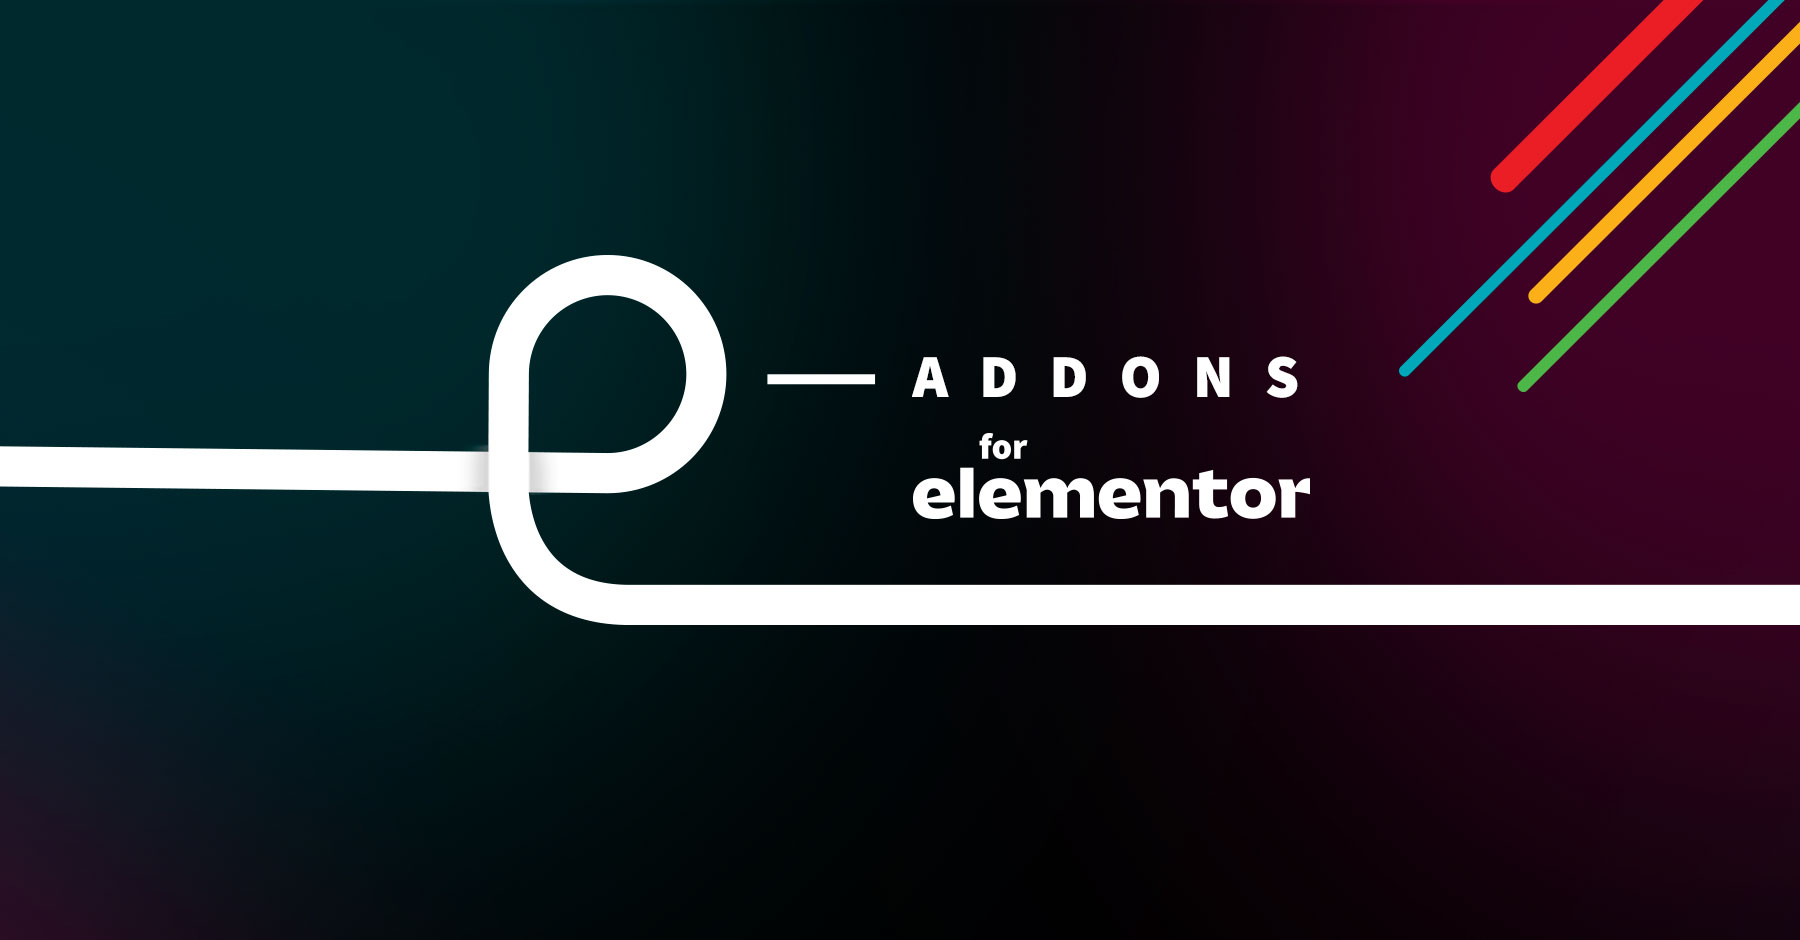 E-Addons